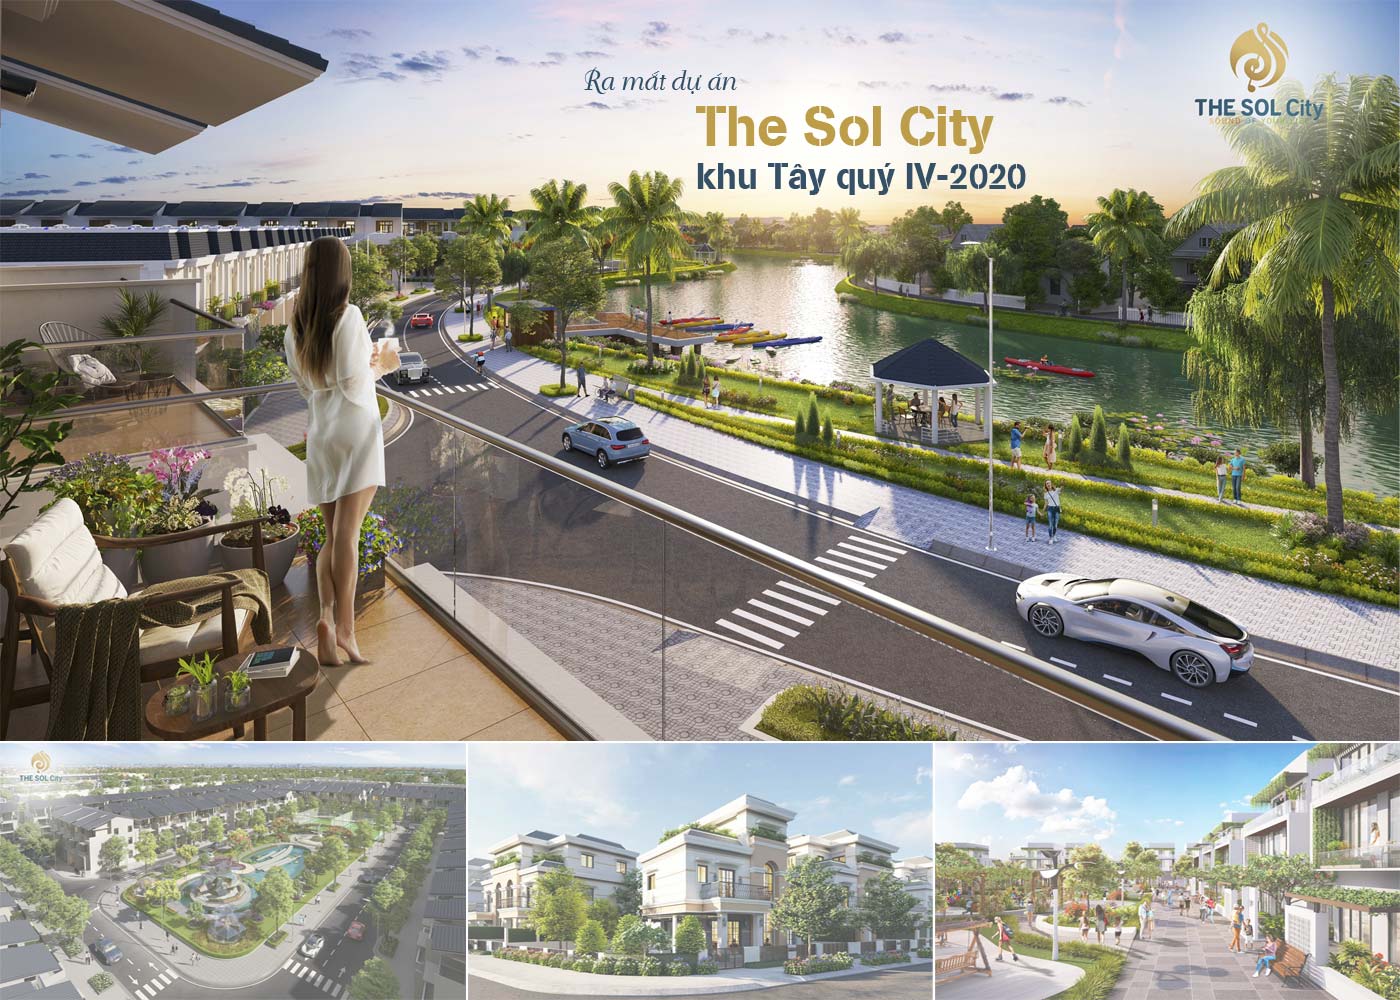 Ra mắt dự án The Sol City khu Tây quý IV-2020 - Ảnh 1